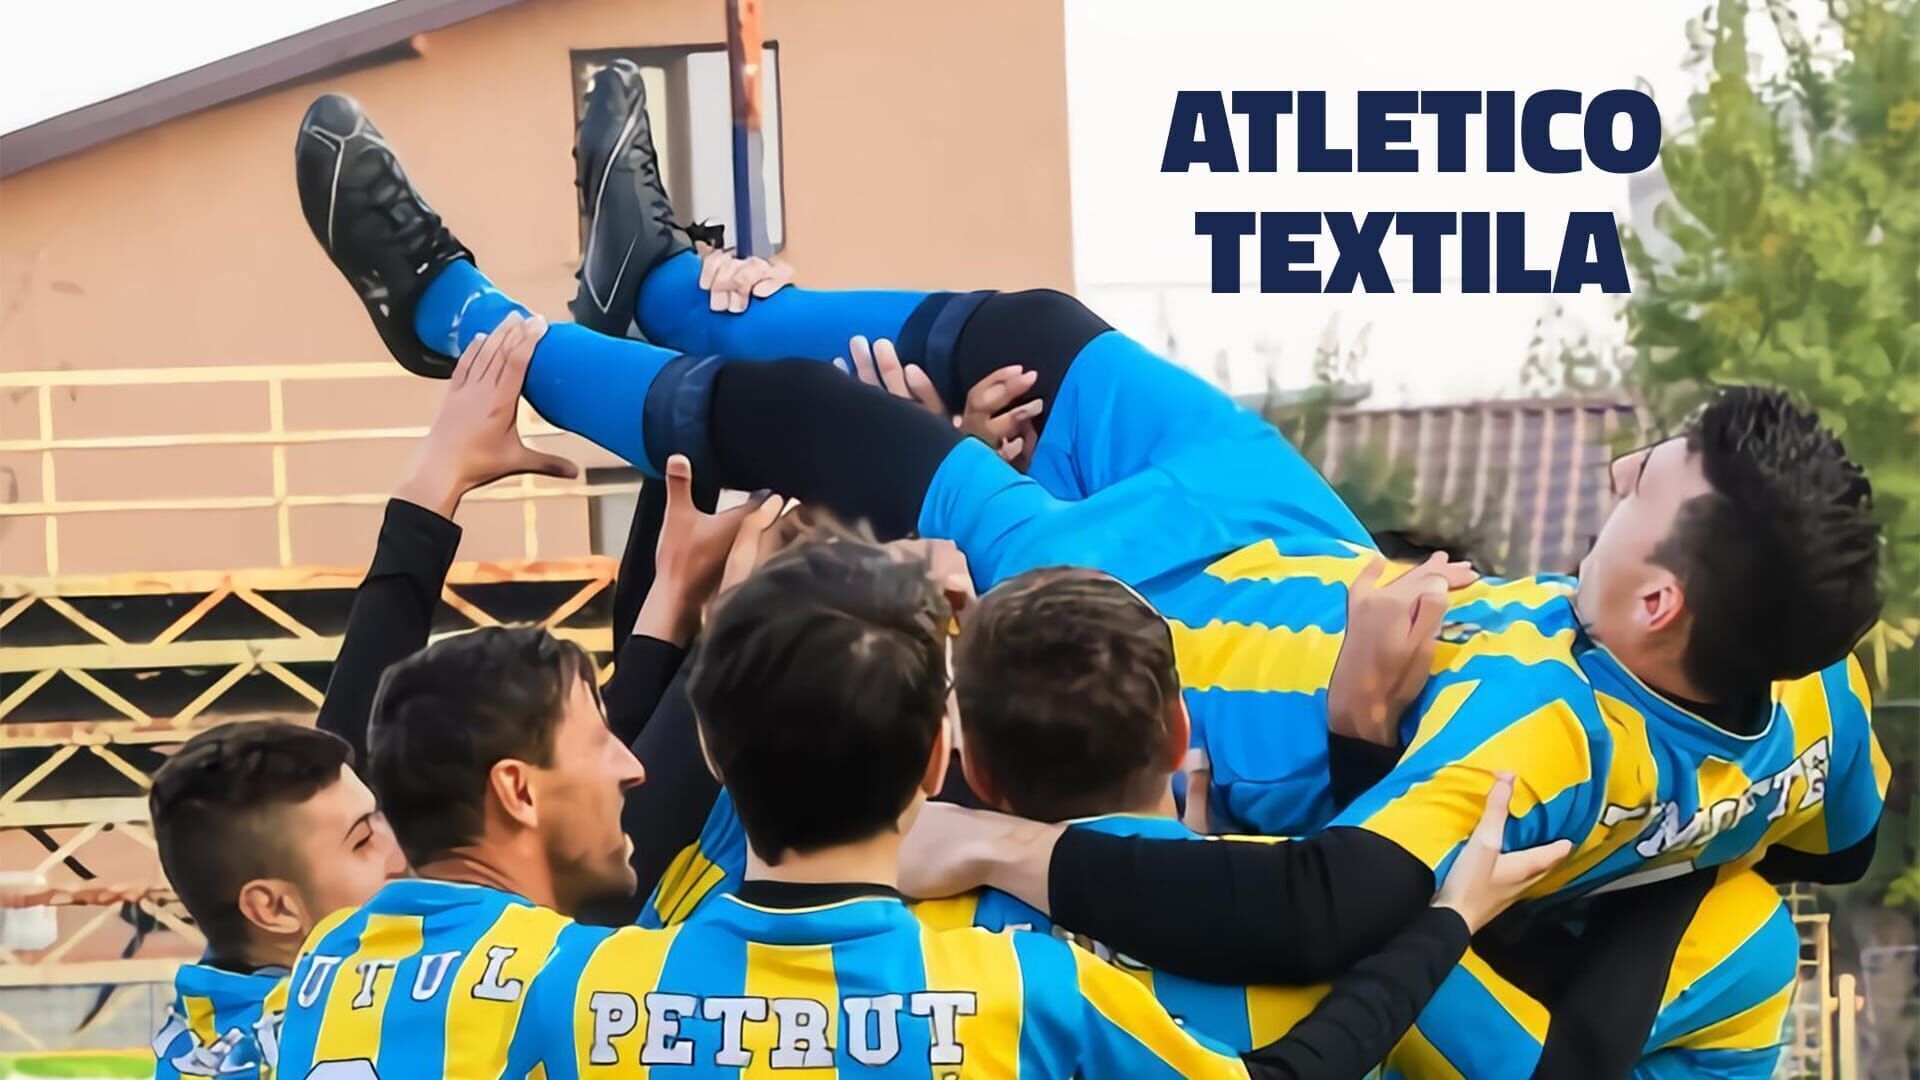 Atletico Textila - Tati